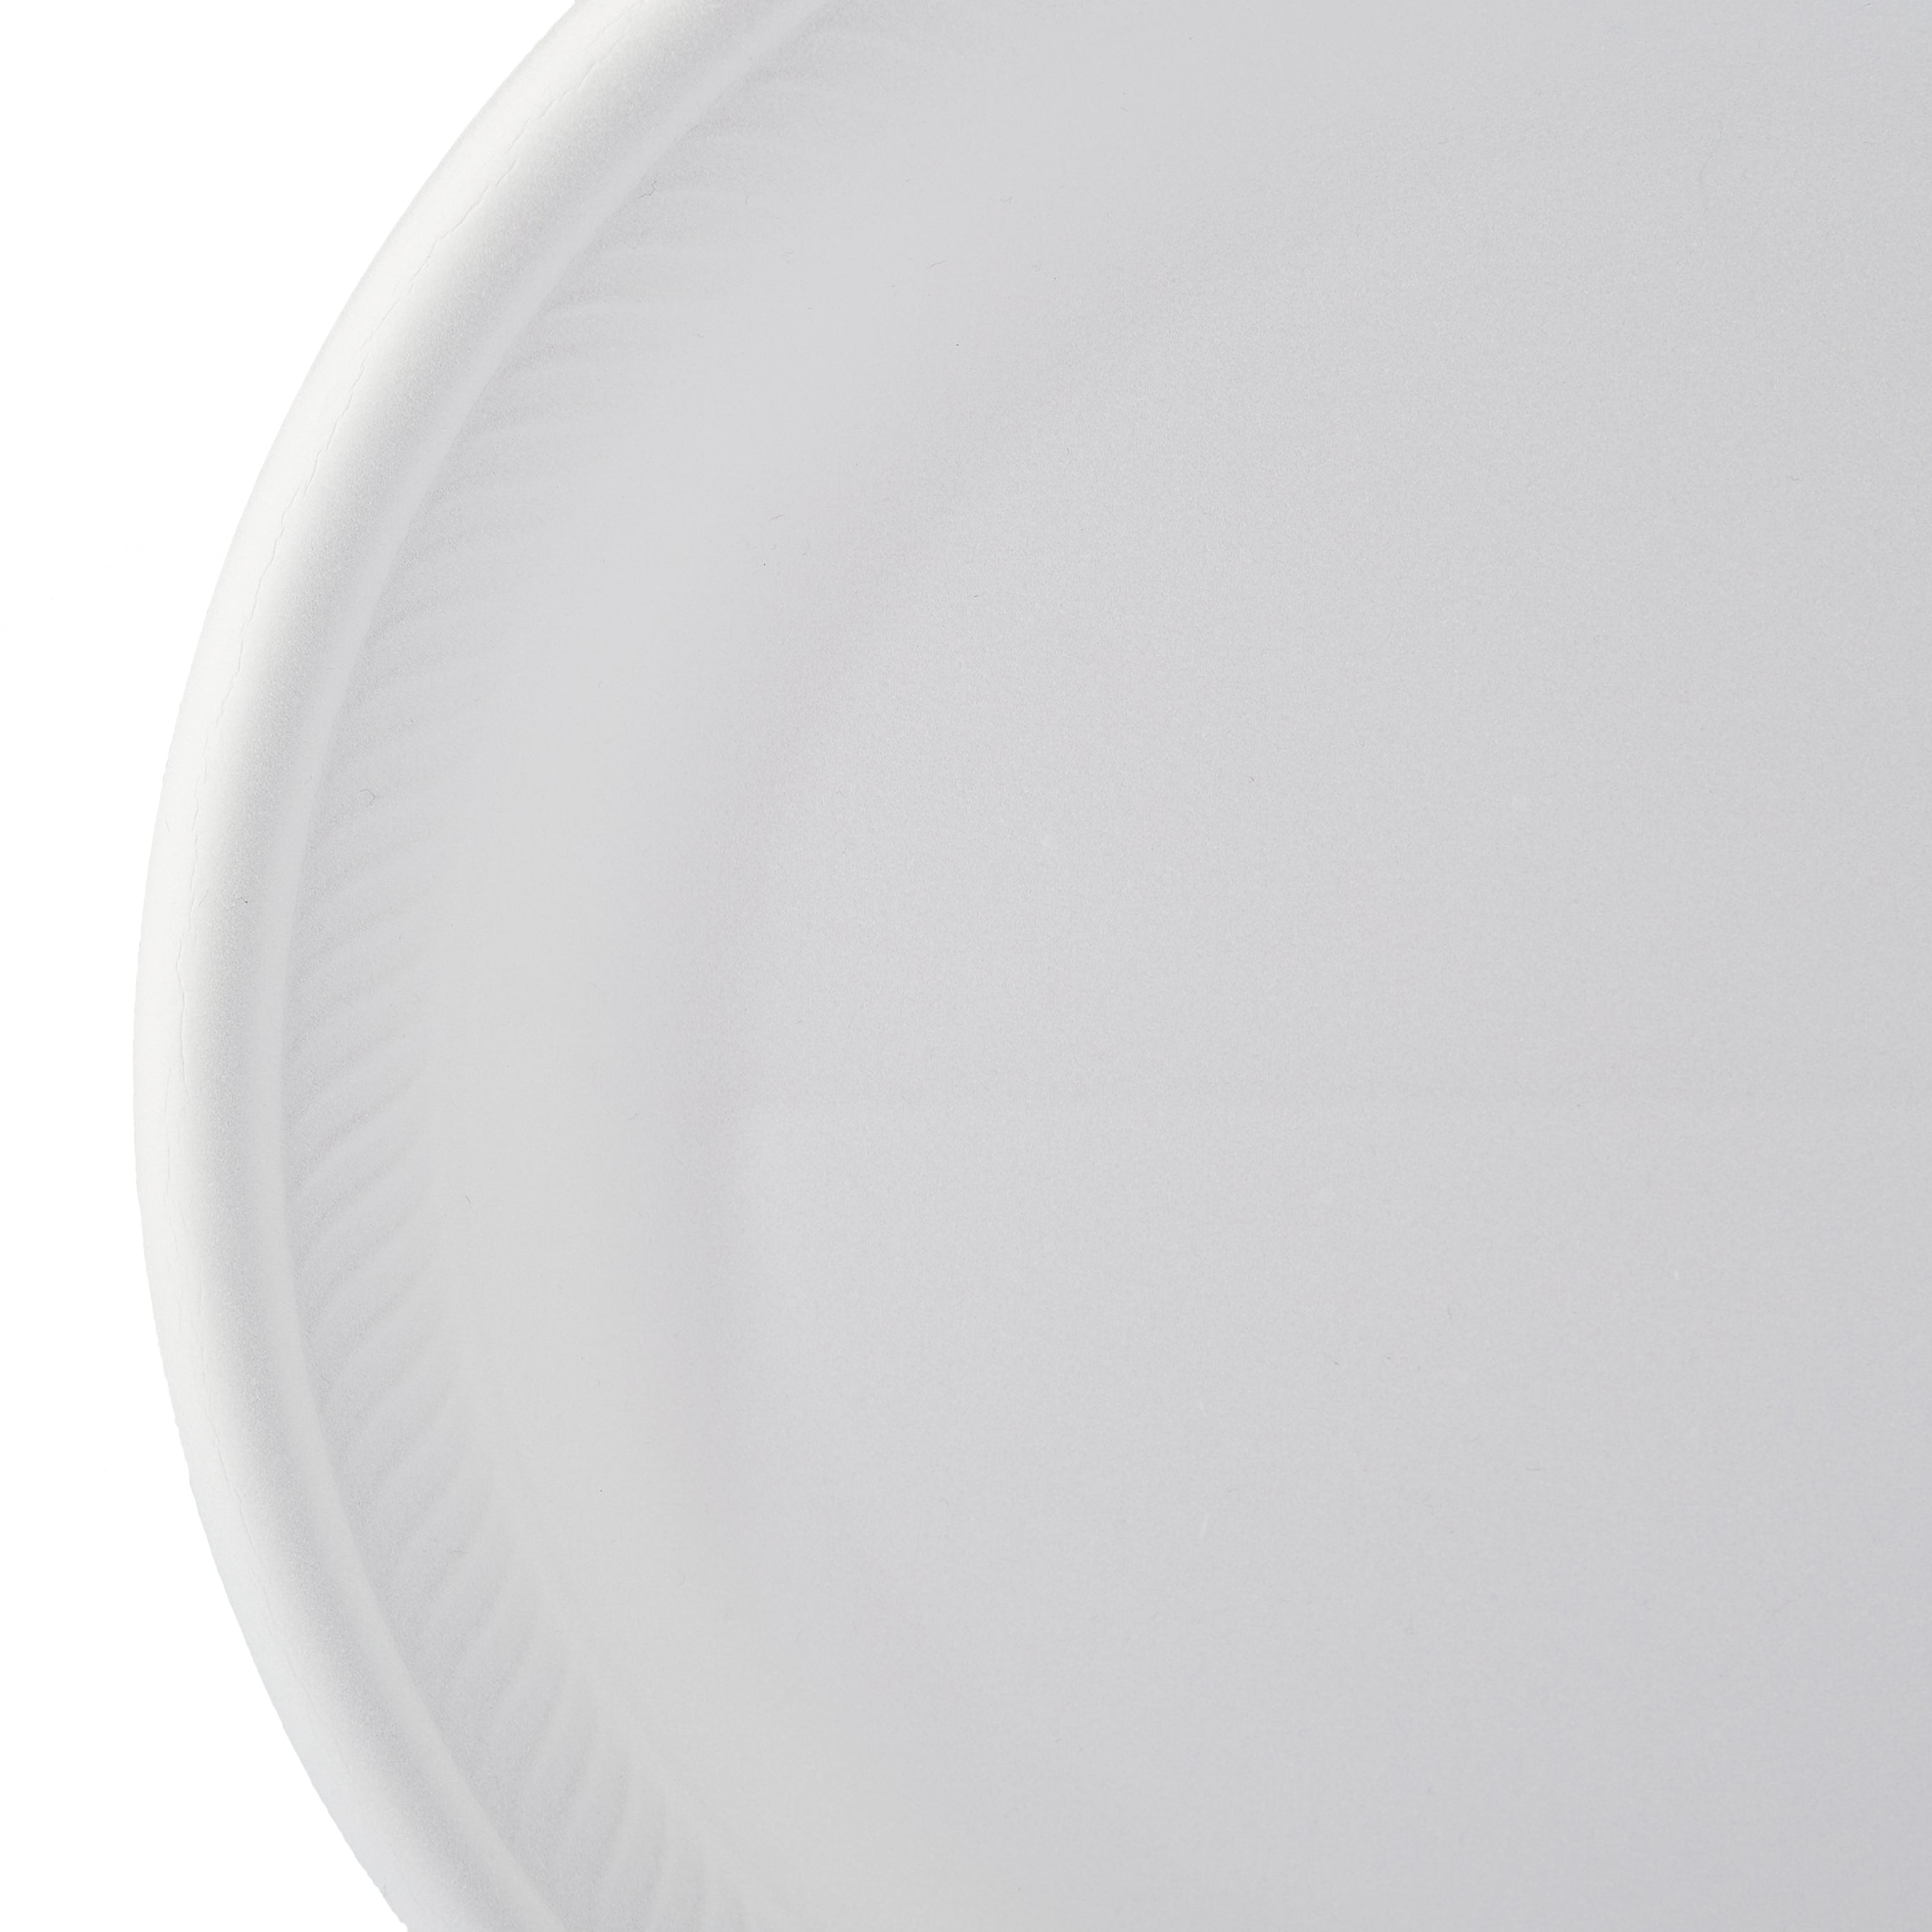 10 Inch Round Foam Plate